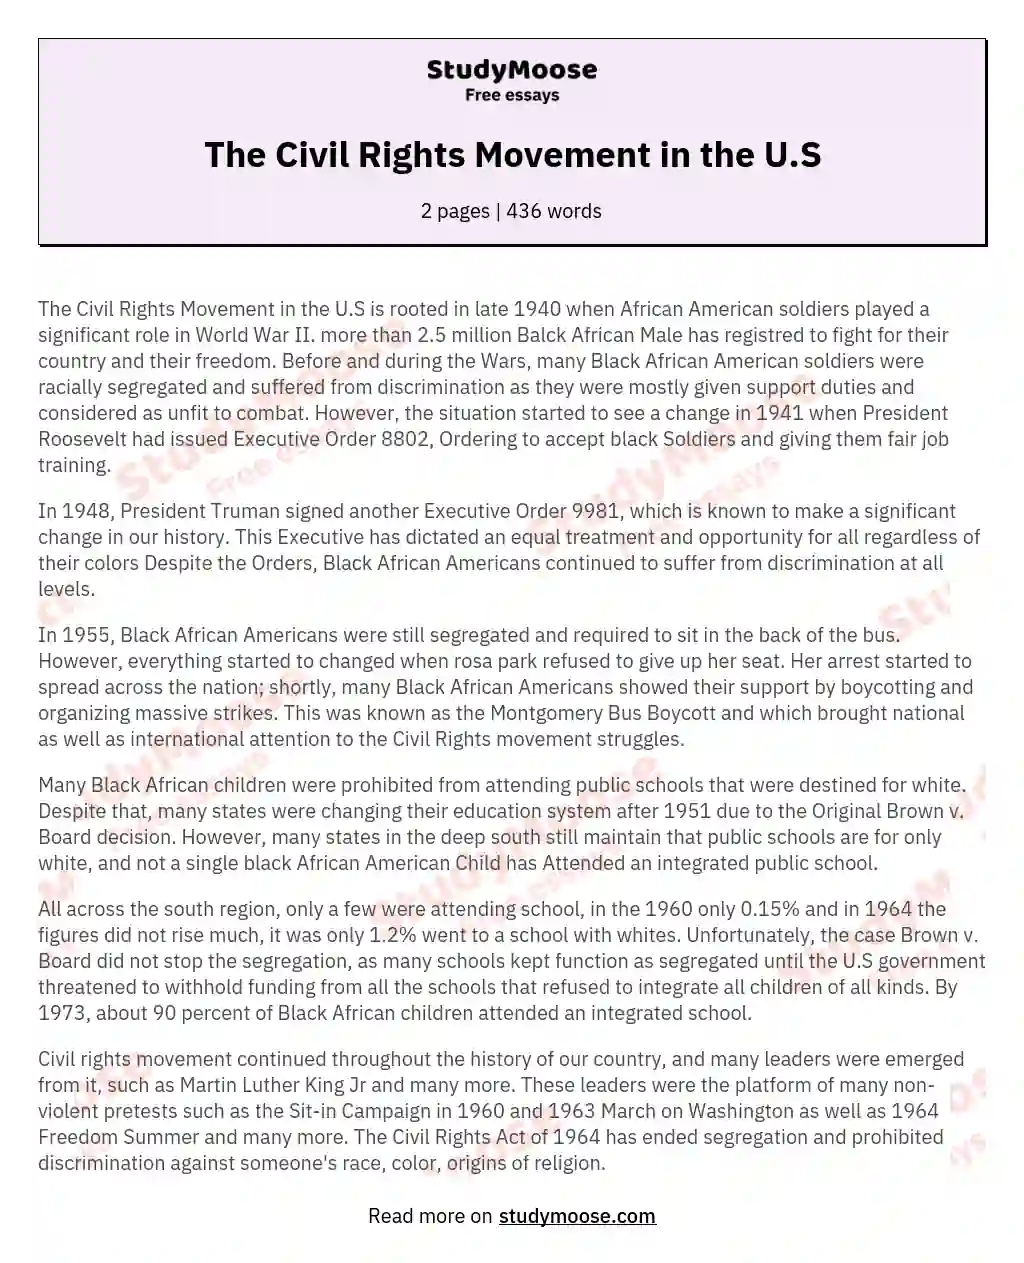 The Civil Rights Movement in the U.S essay